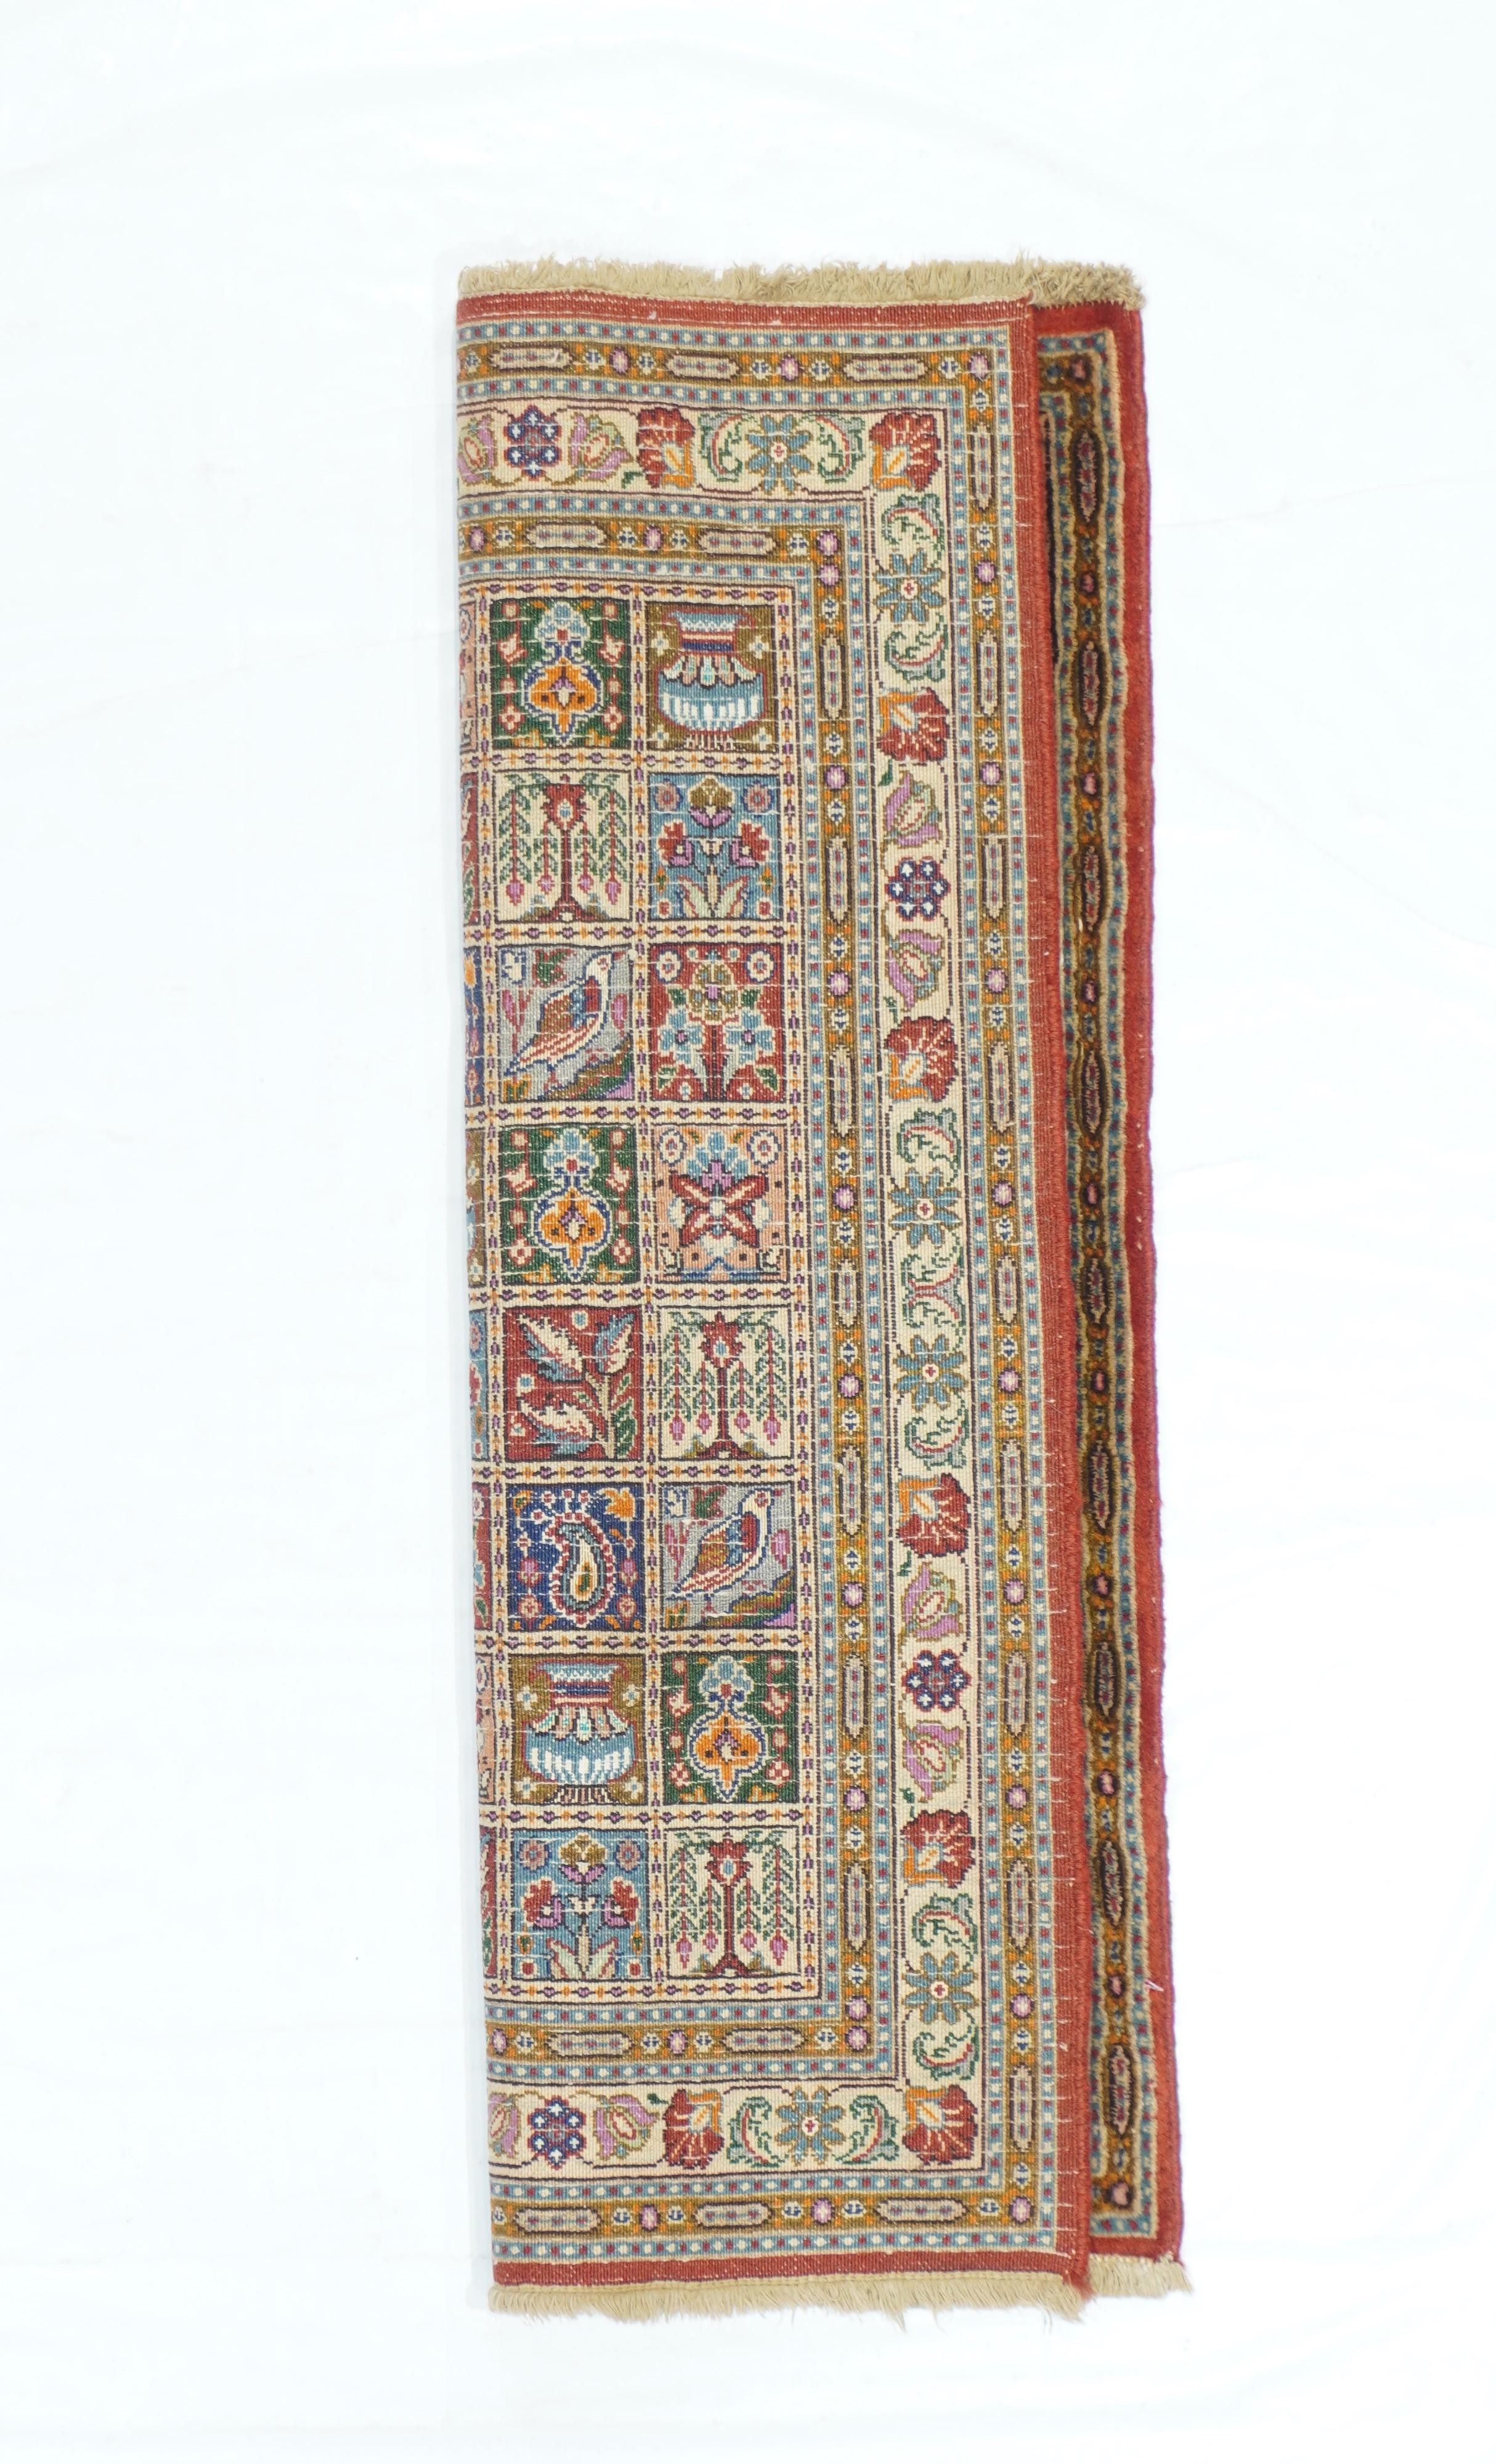 Vintage Khorassan rug 2' x 2.11''.